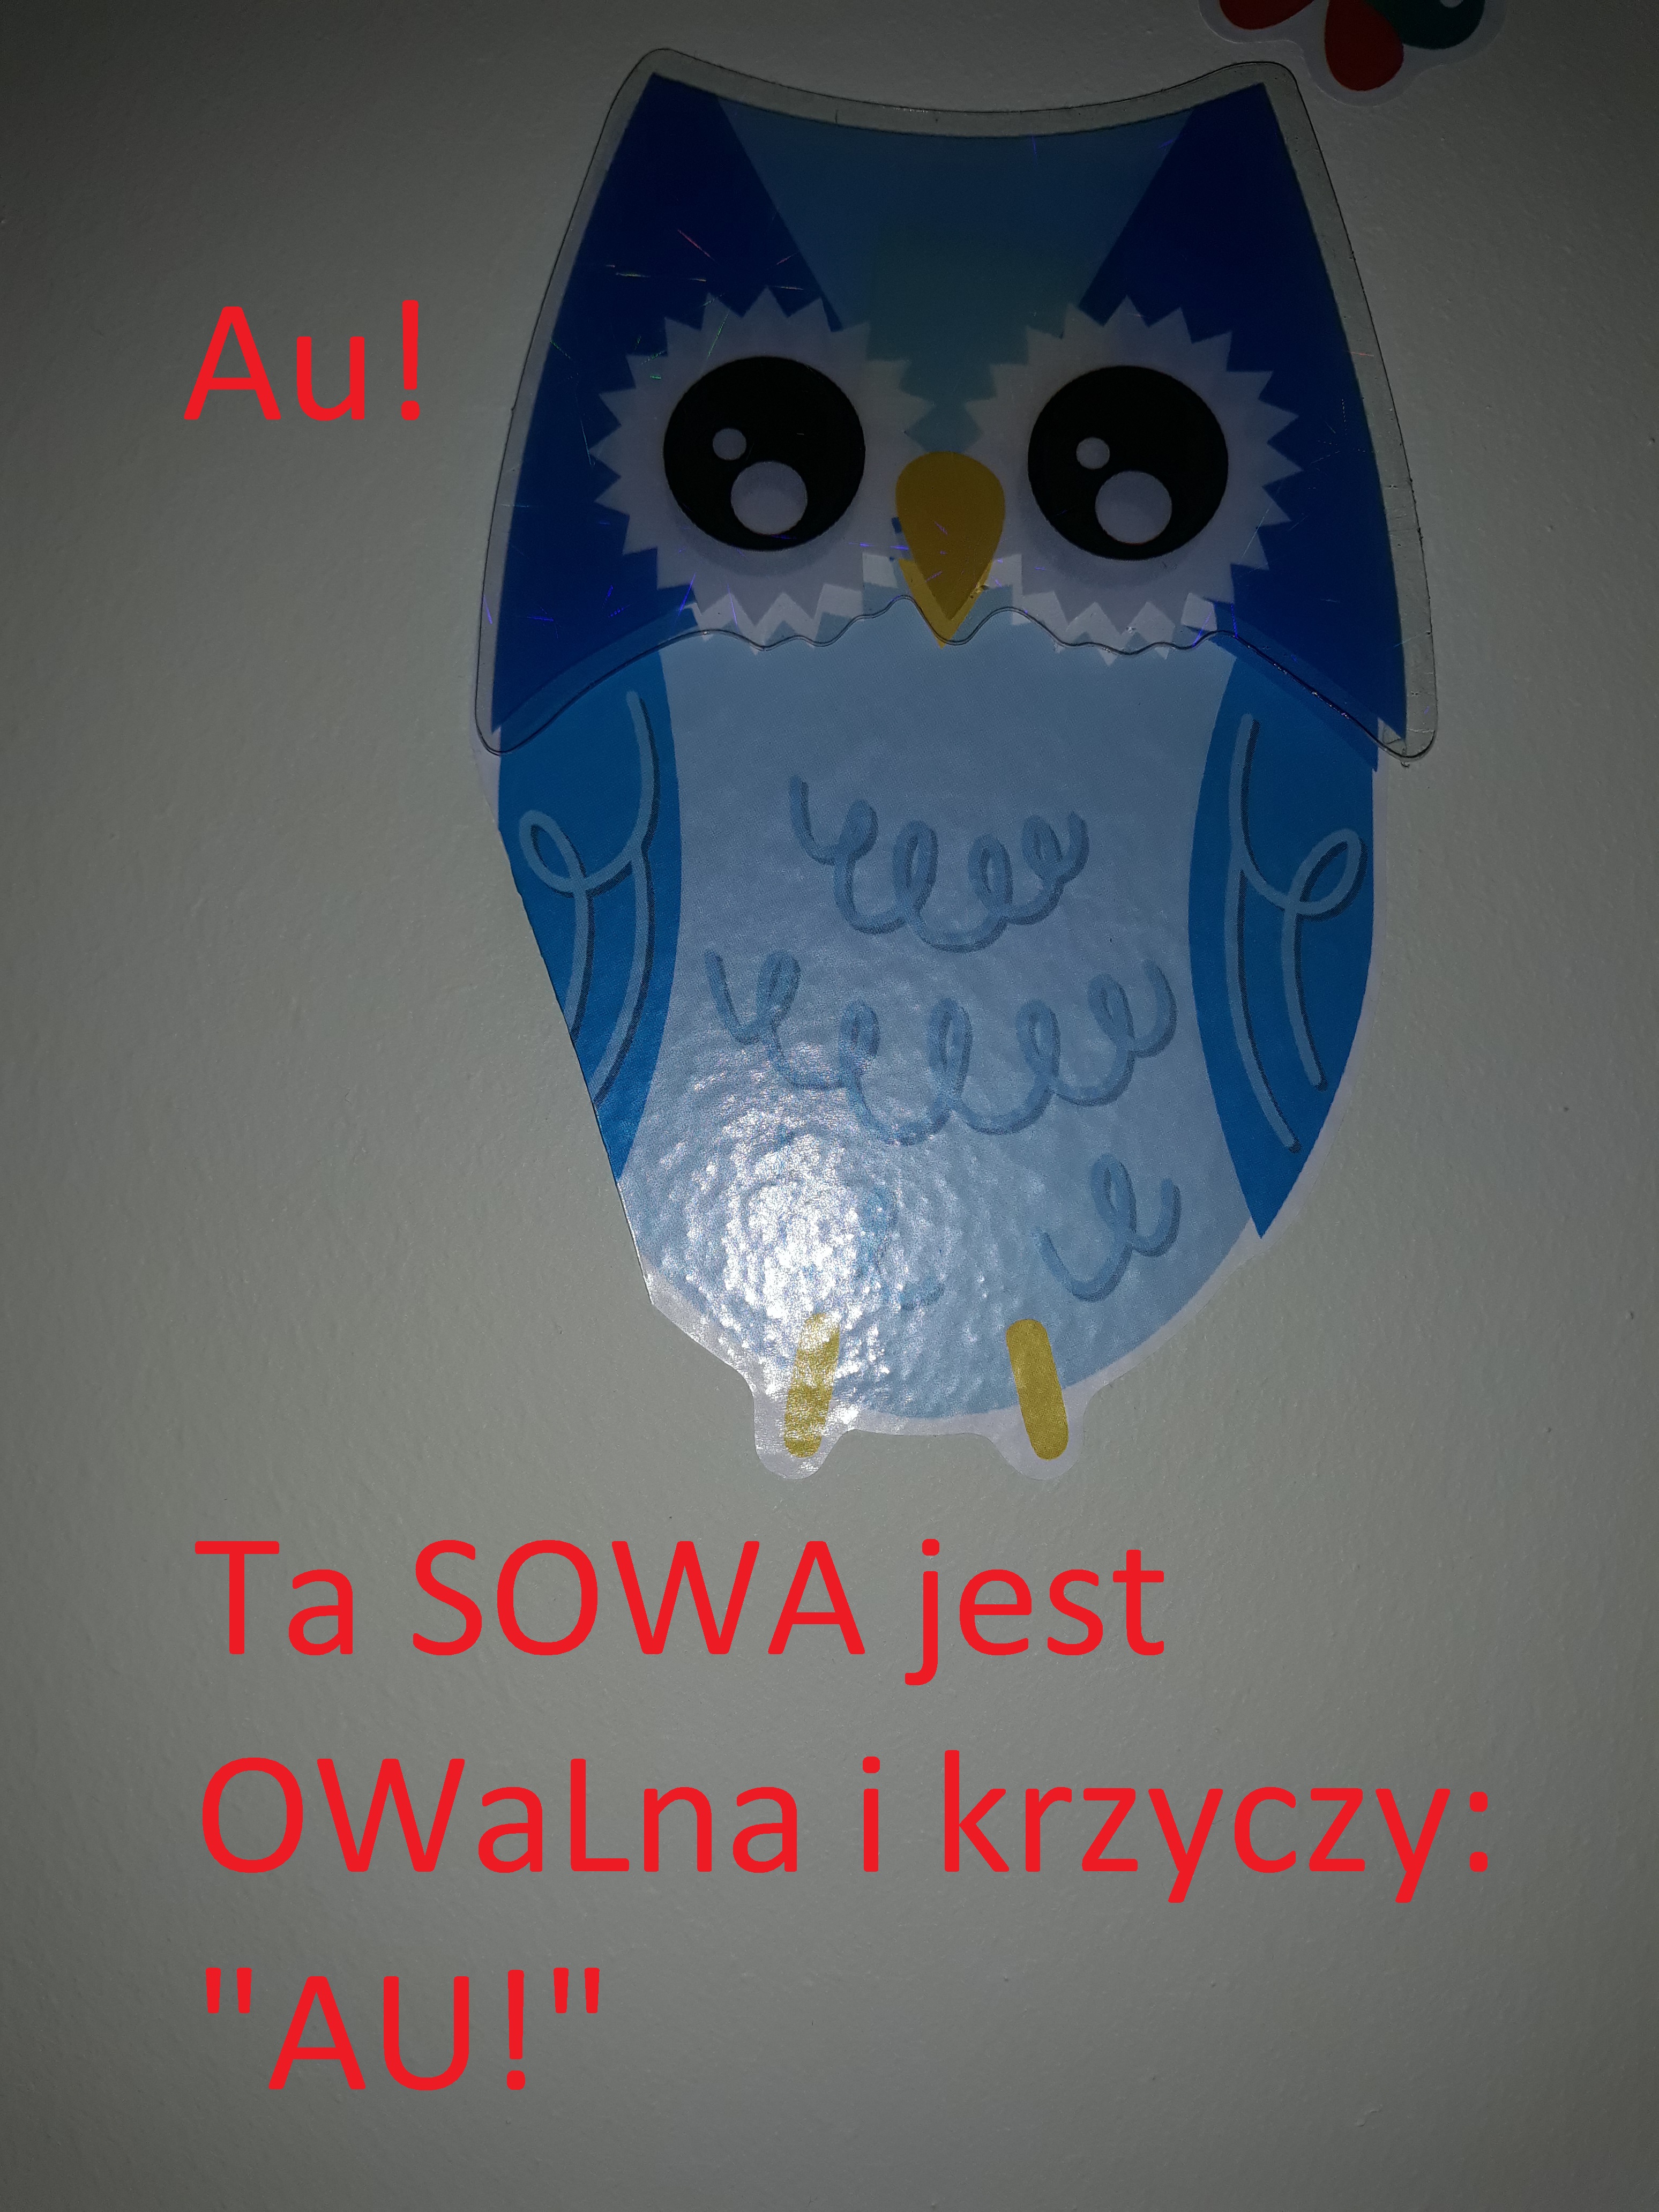 owl - sowa